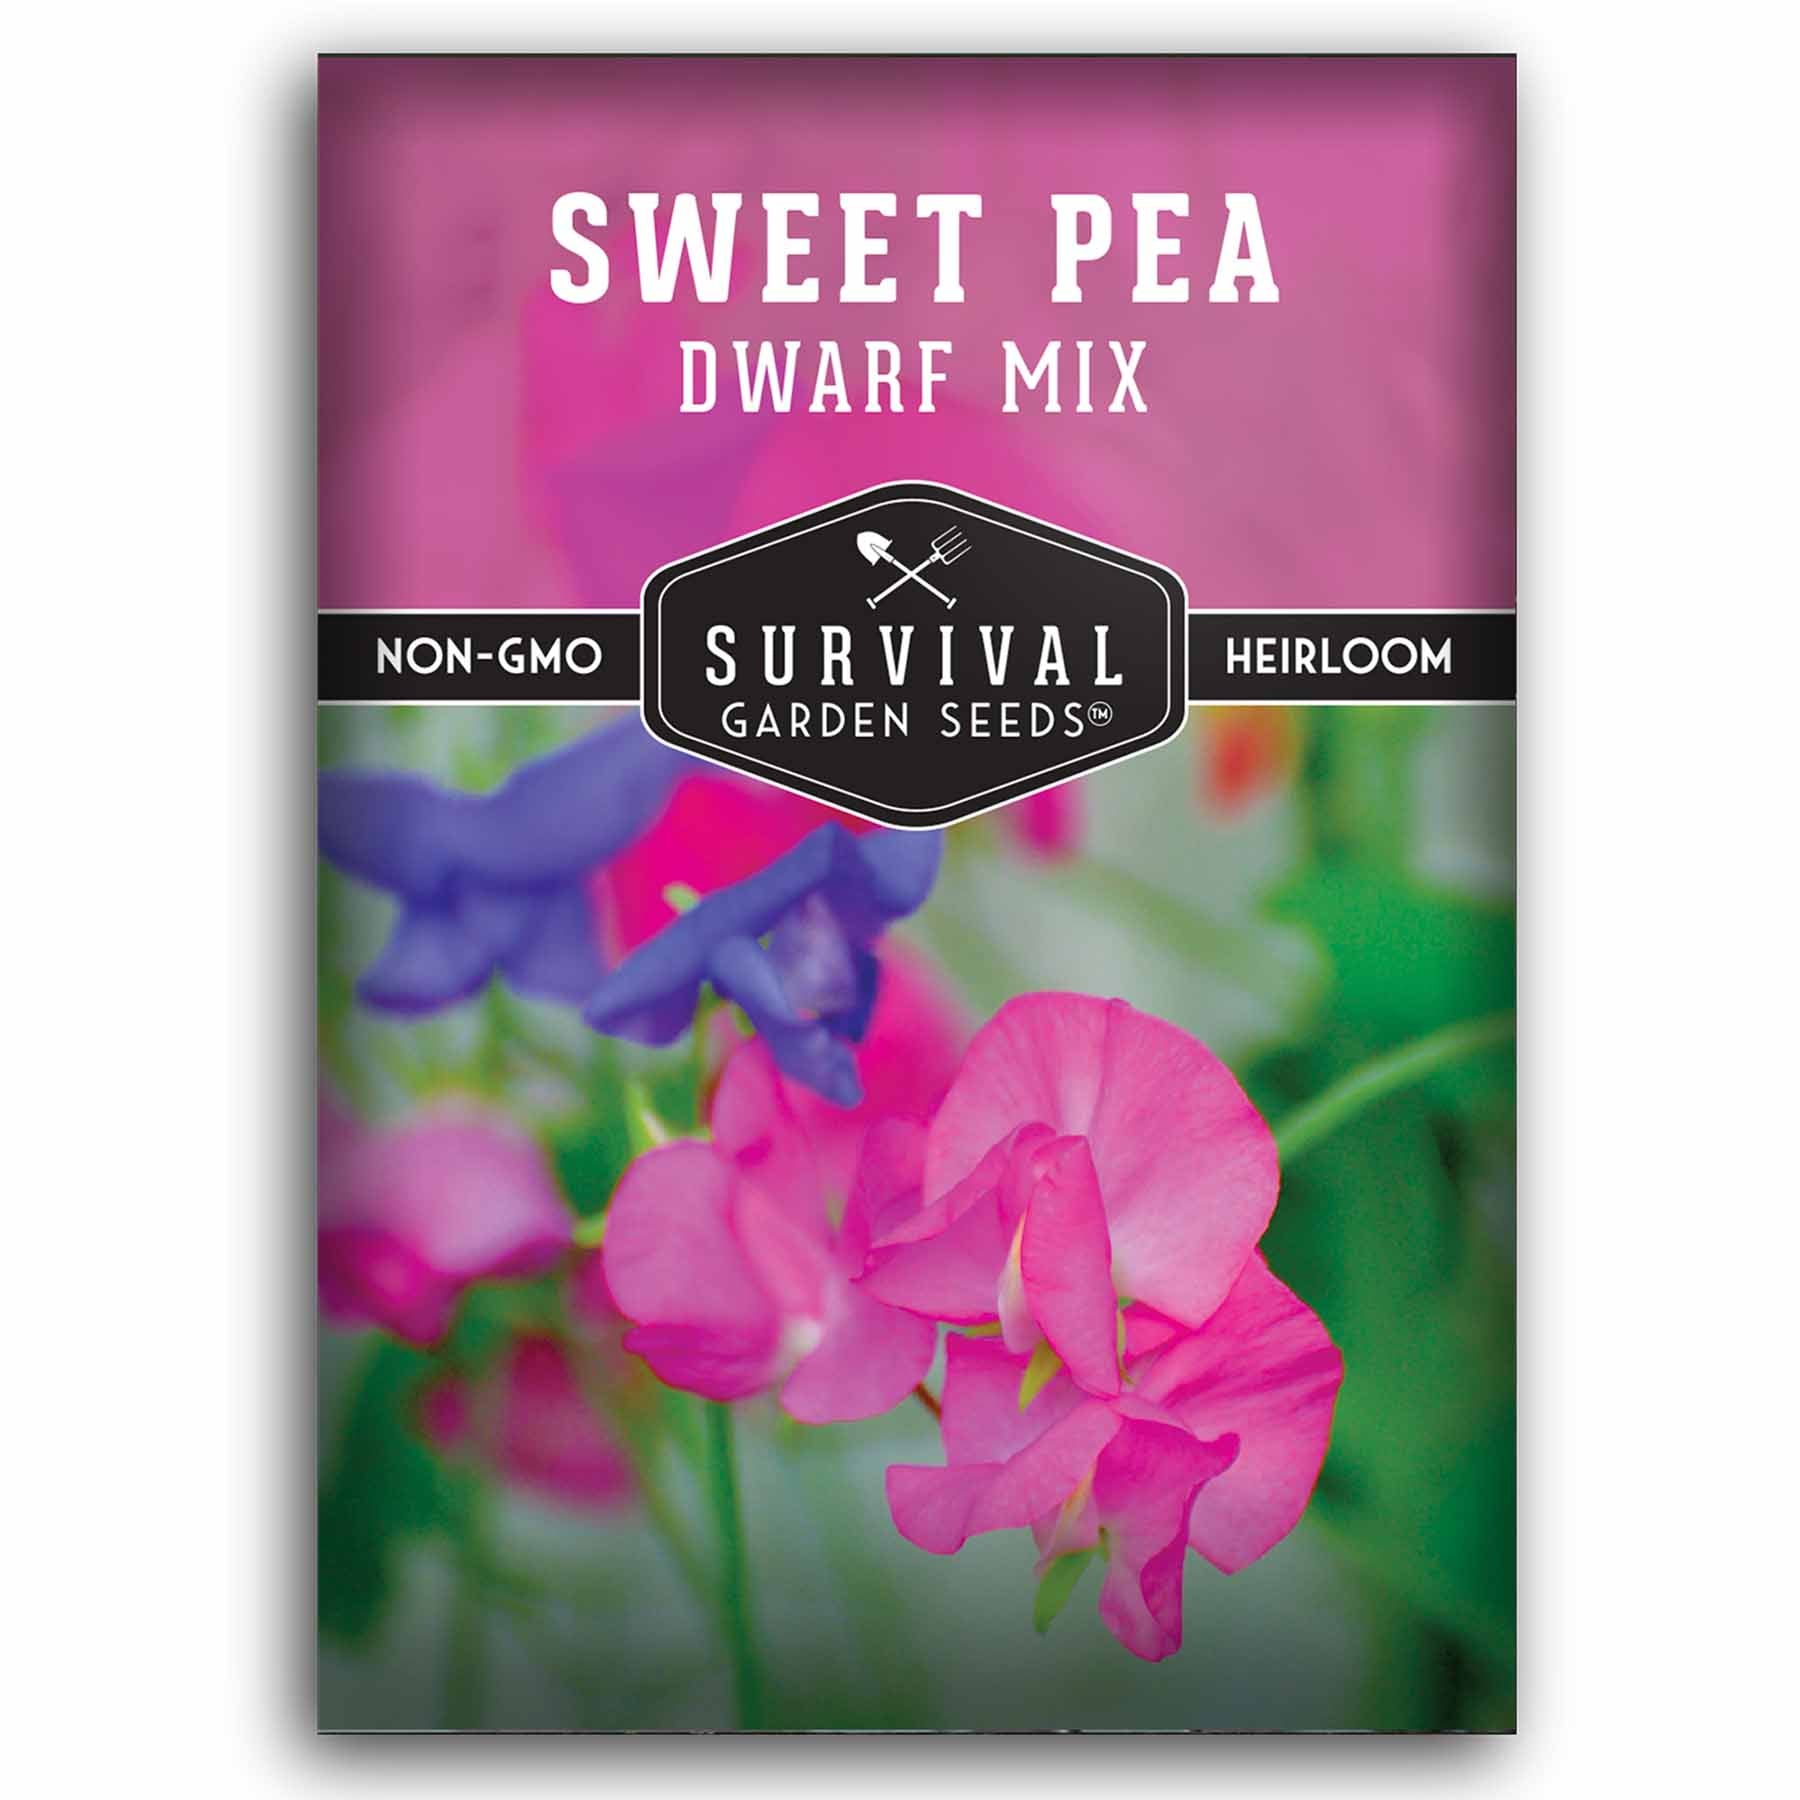 1 packet of Sweet Pea seeds